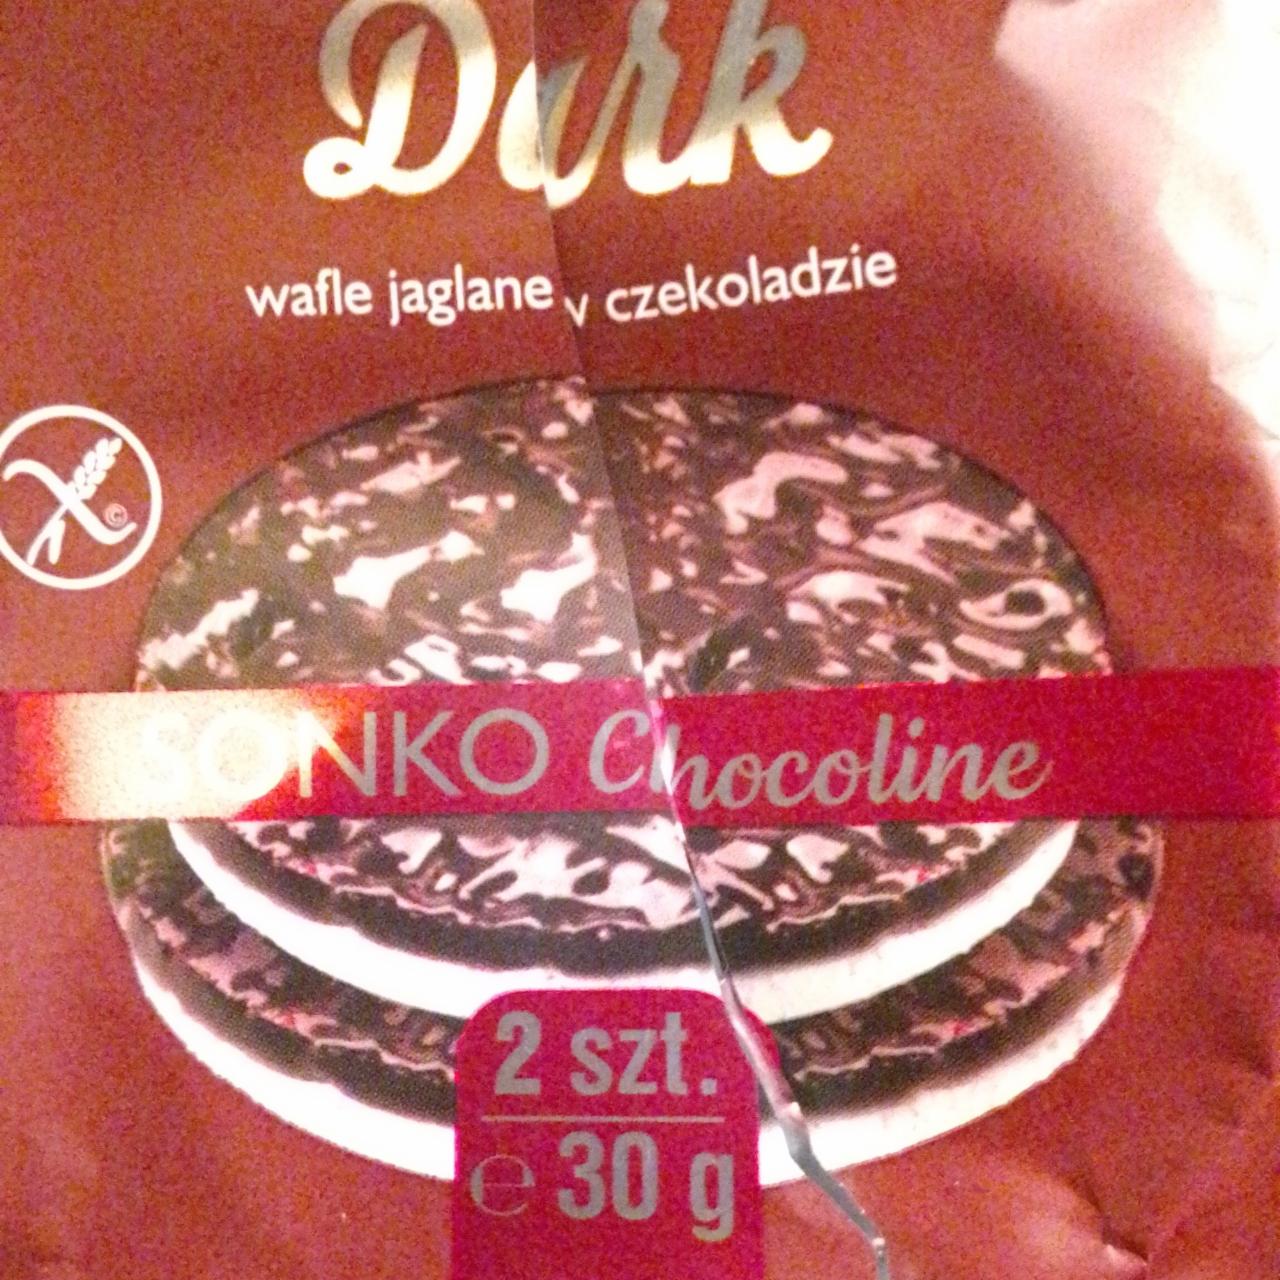 Képek - Dark wafle ryzowe w czekoladzie Sonko